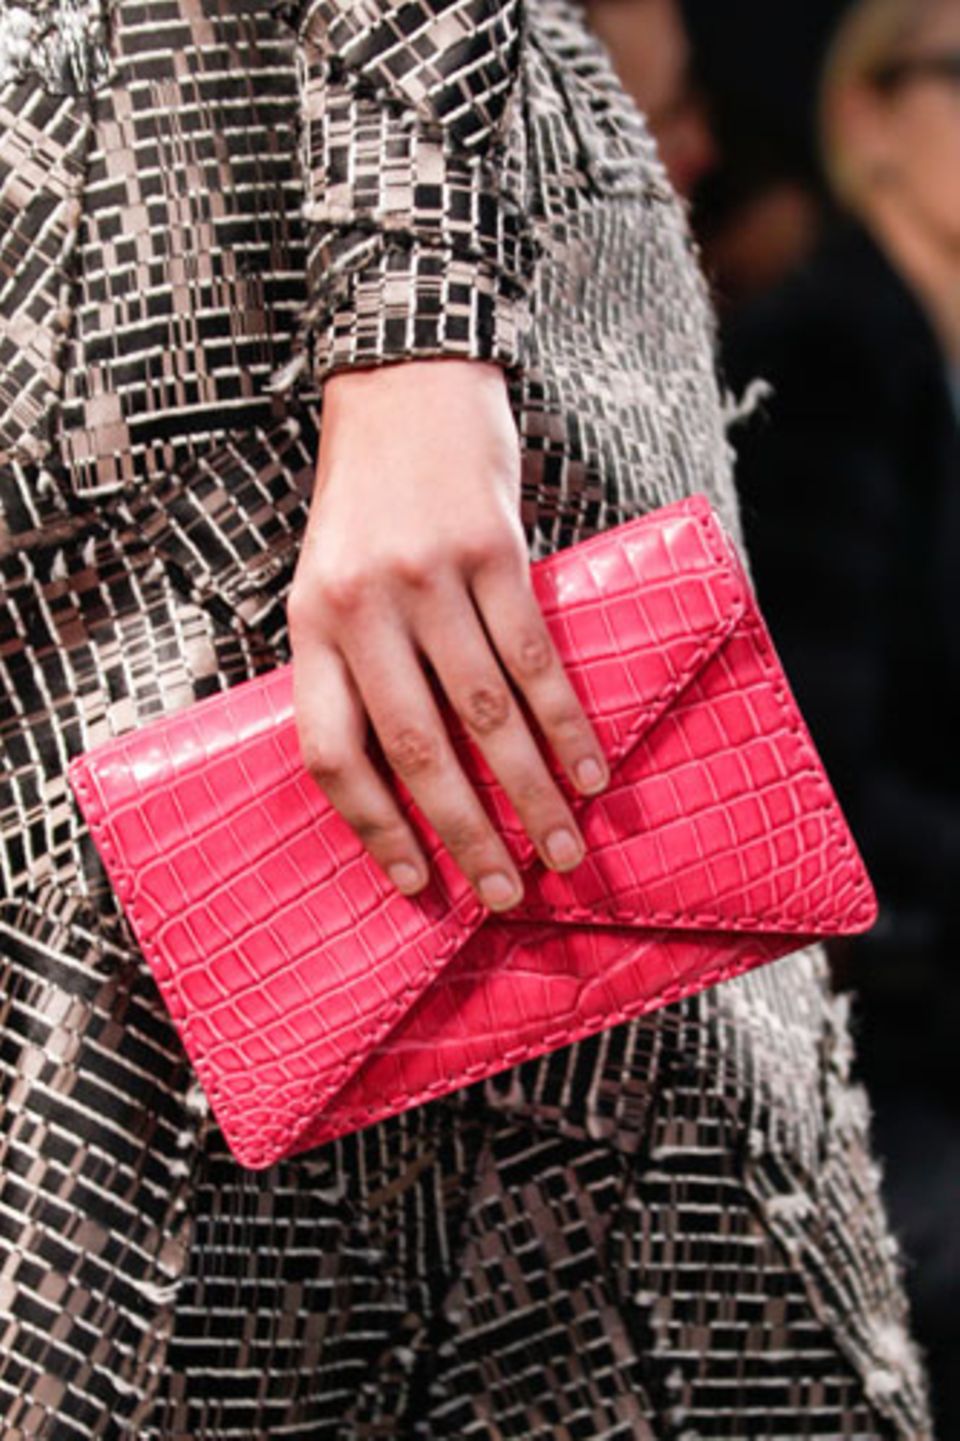 Die Farbwahl vieler Designer: bunt! Gesehen bei Chanel (in leuchtendem Gelb) und hier in starkem Pink bei Bottega Veneta.